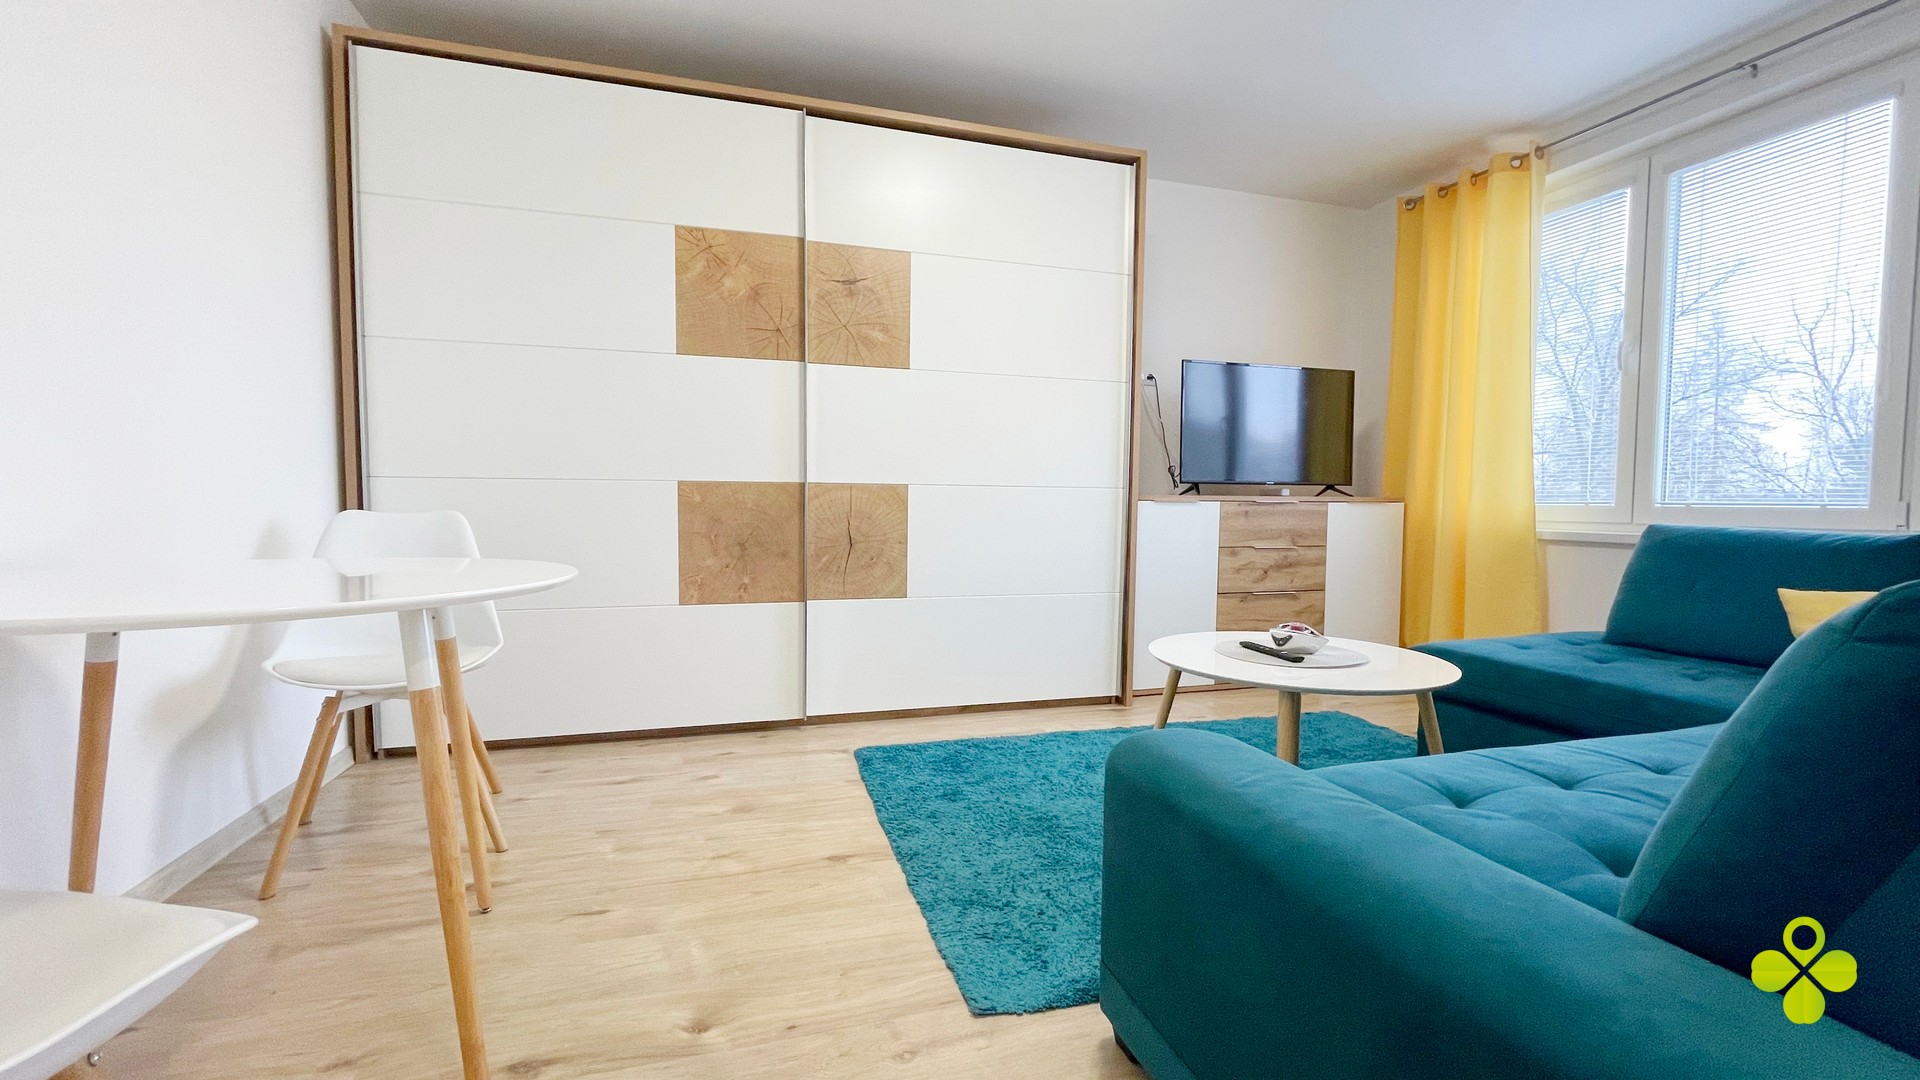 PRENAJATÝ – Zrekonštruovaný 1 a pol izbový byt Prievidza Dlhá ulica